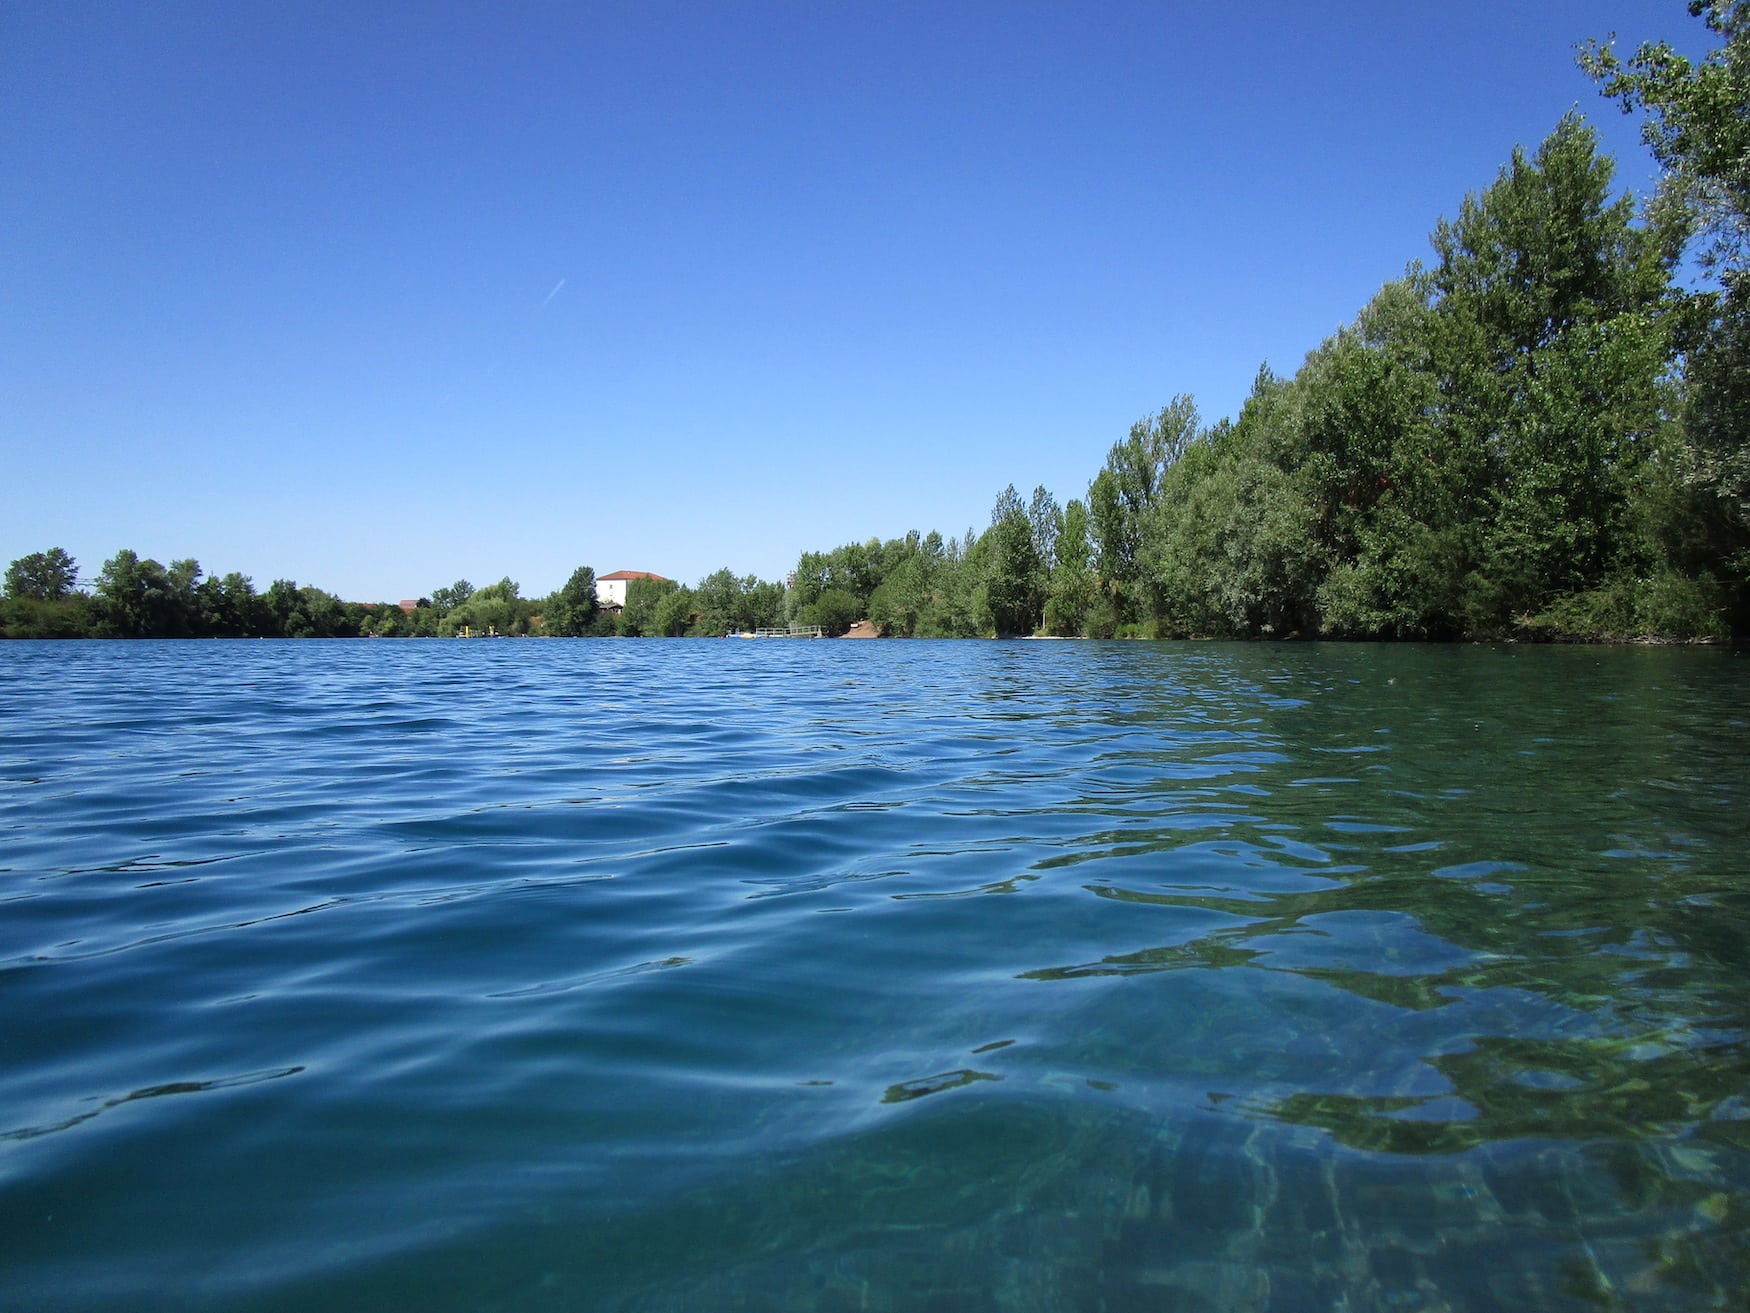 Sundhäuser See, einer der besten Spots zum Tauchen in Deutschland